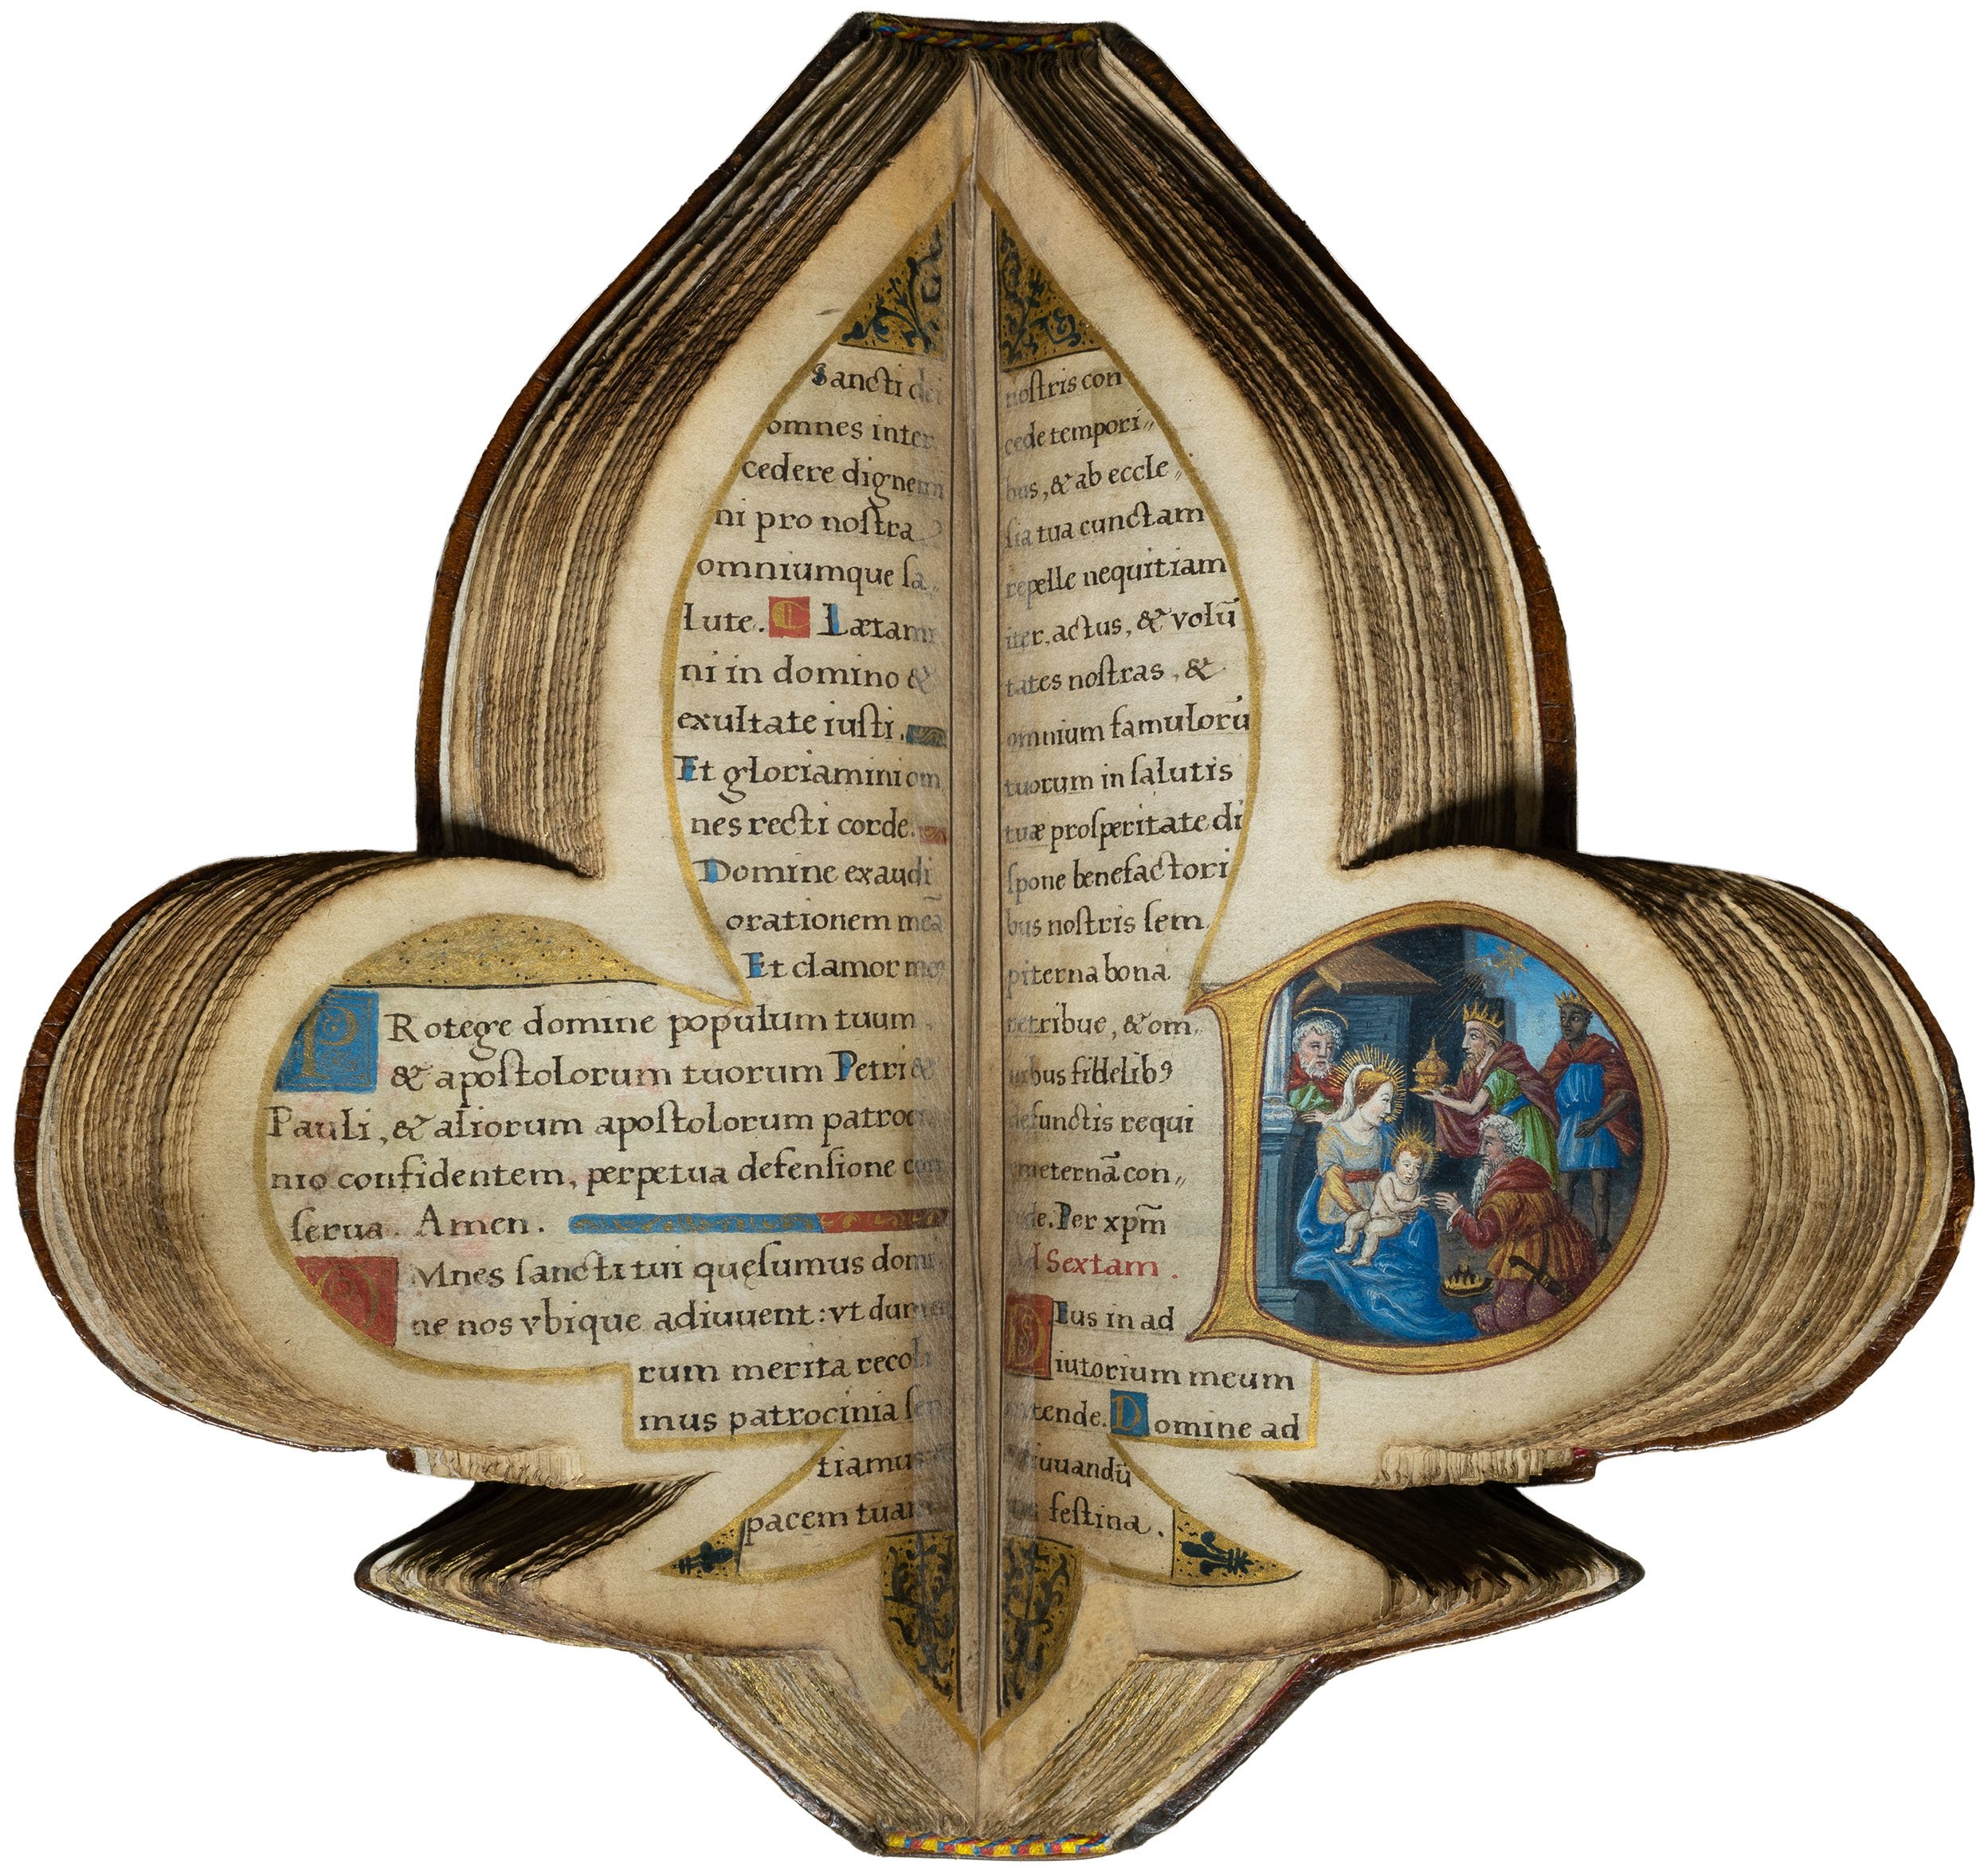 Book-of-hours-bourbon-lily-shape-manuscript-napoleon-beauharnais-combermere-paris-16th-century-16.jpg